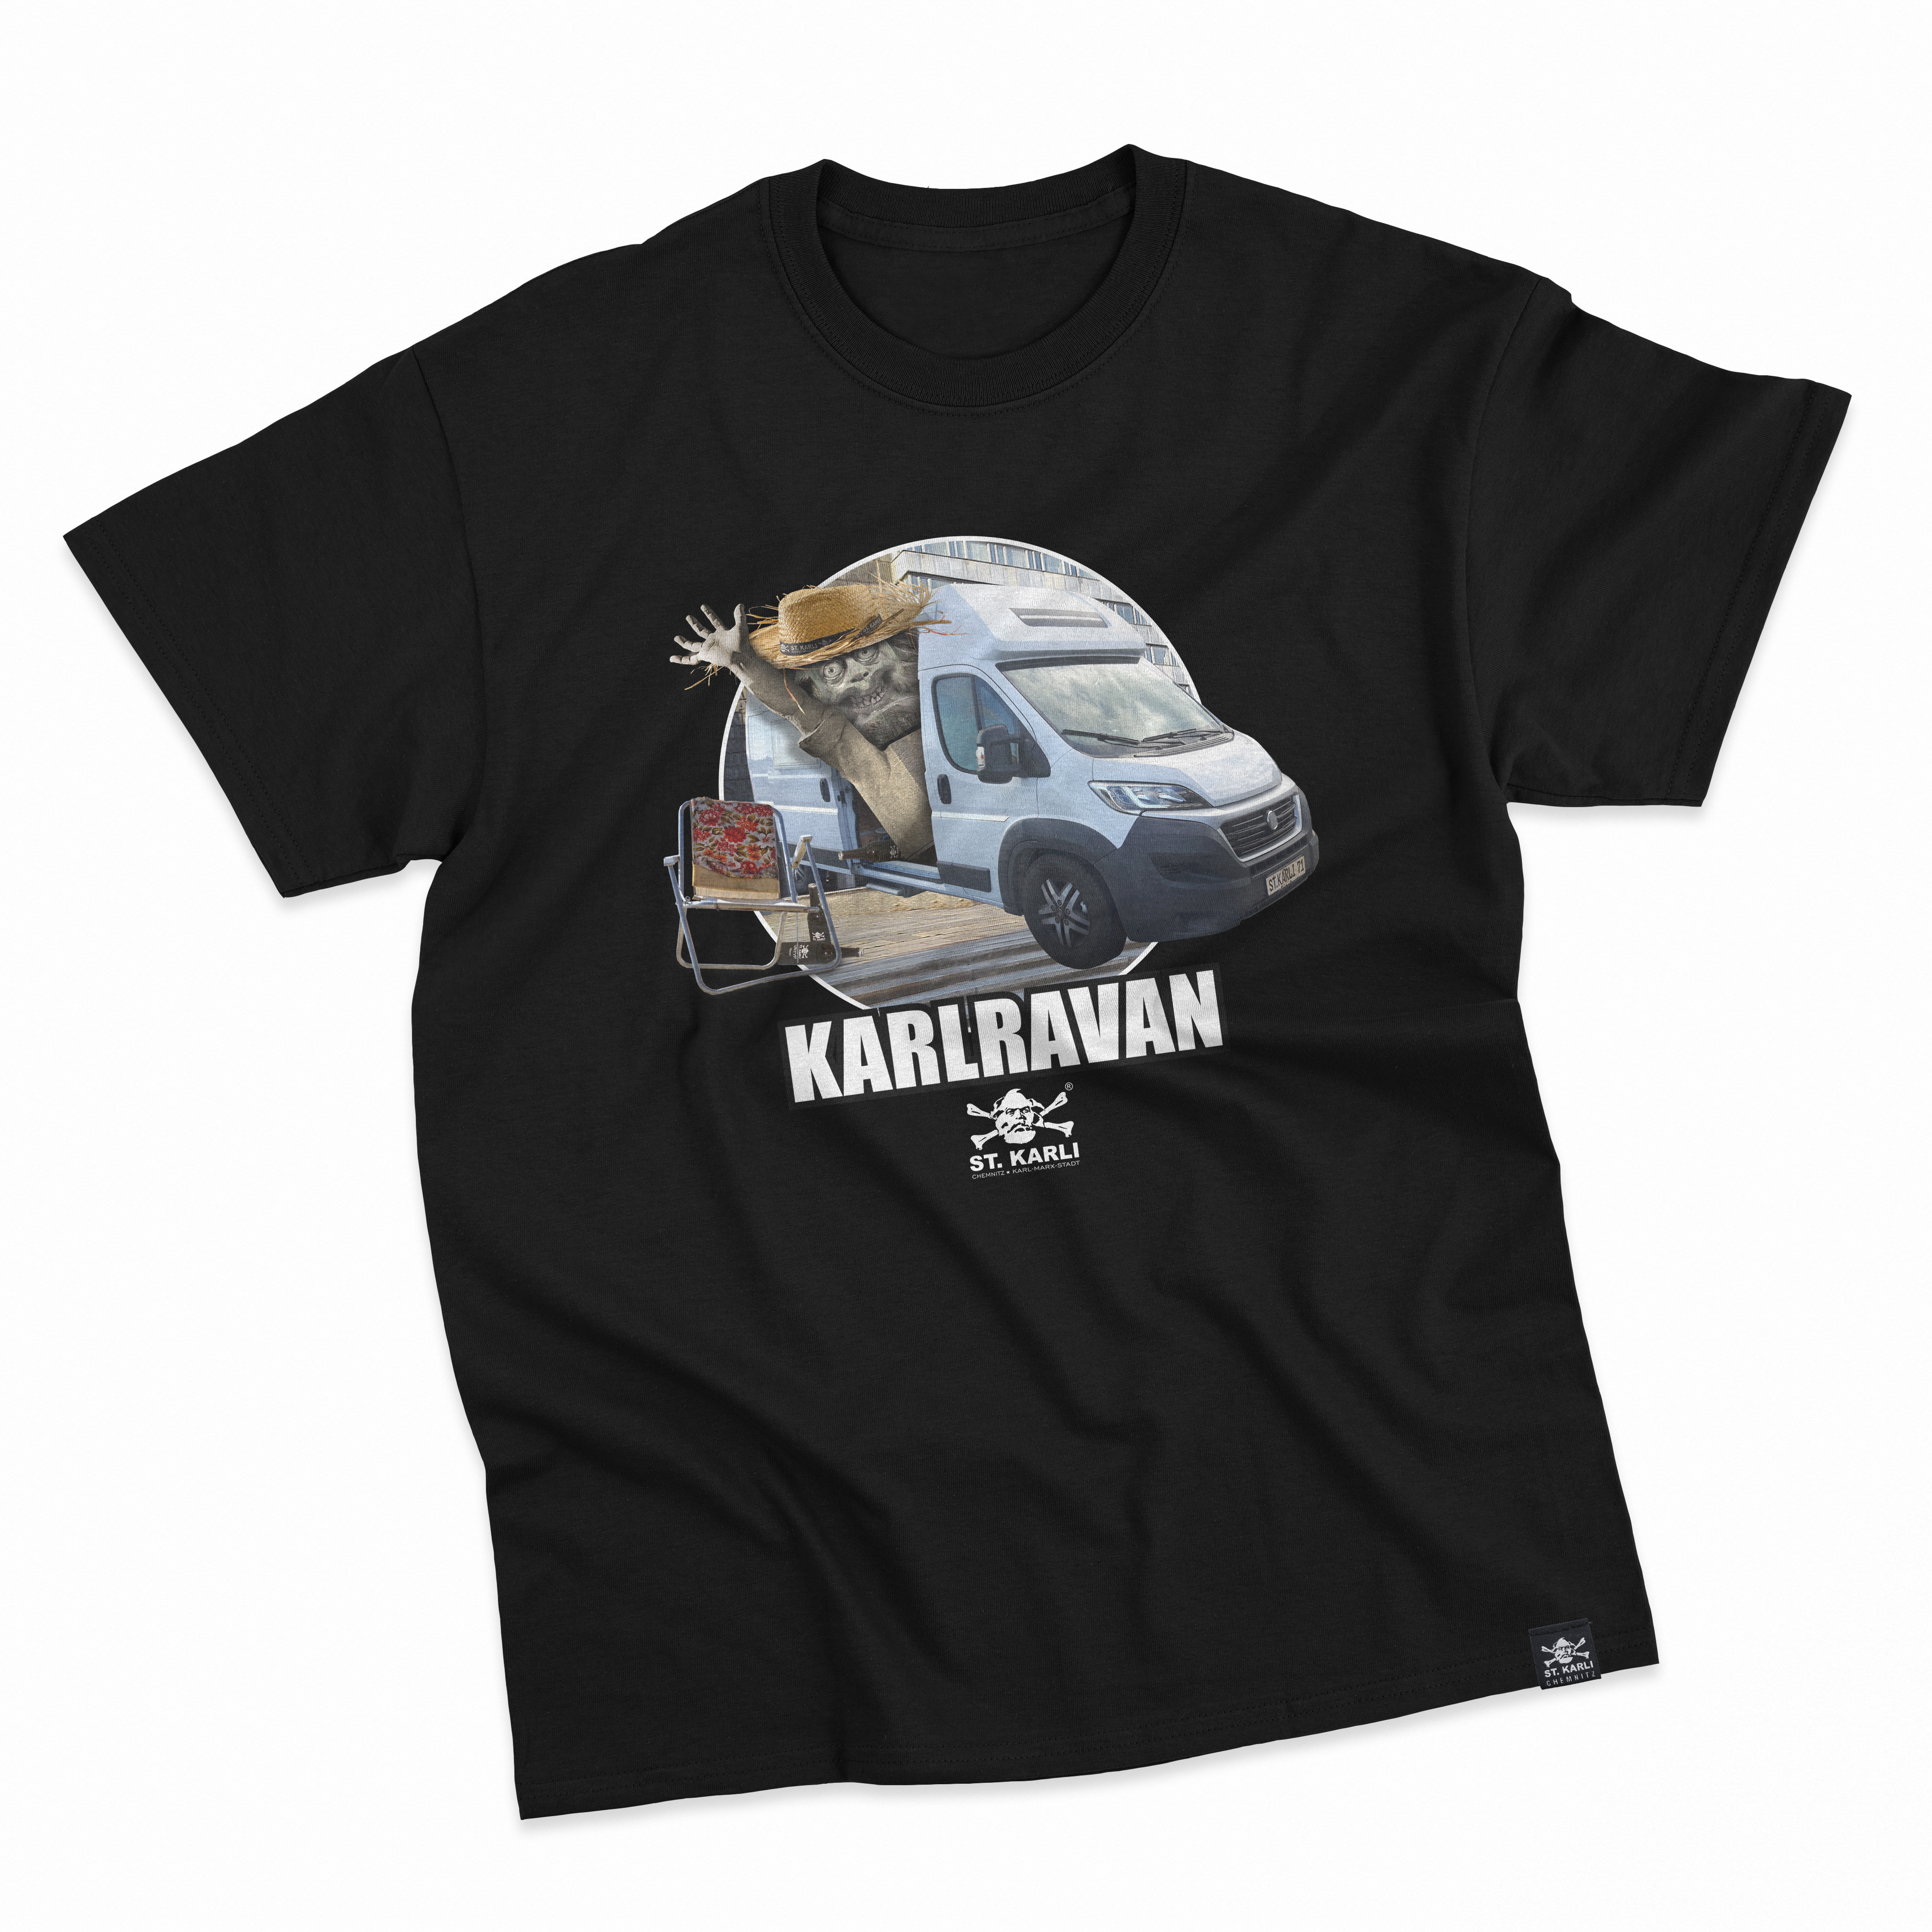 St. Karli T-Shirt "KARLRAVAN"